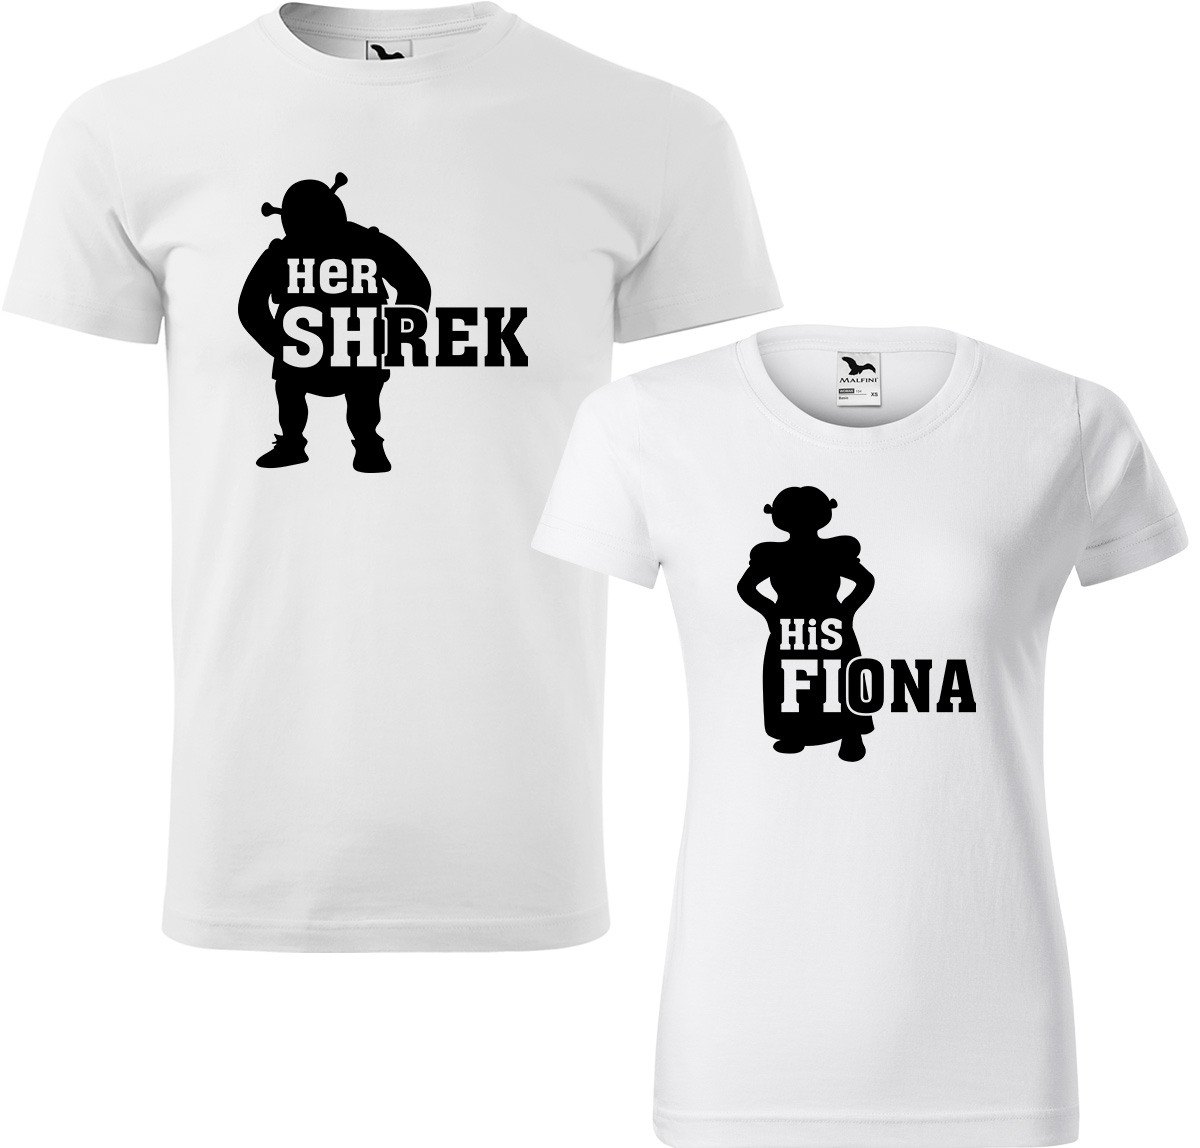 Trička pro páry - Shrek a Fiona Barva: Bílá (00), Velikost dámské tričko: S, Velikost pánské tričko: L